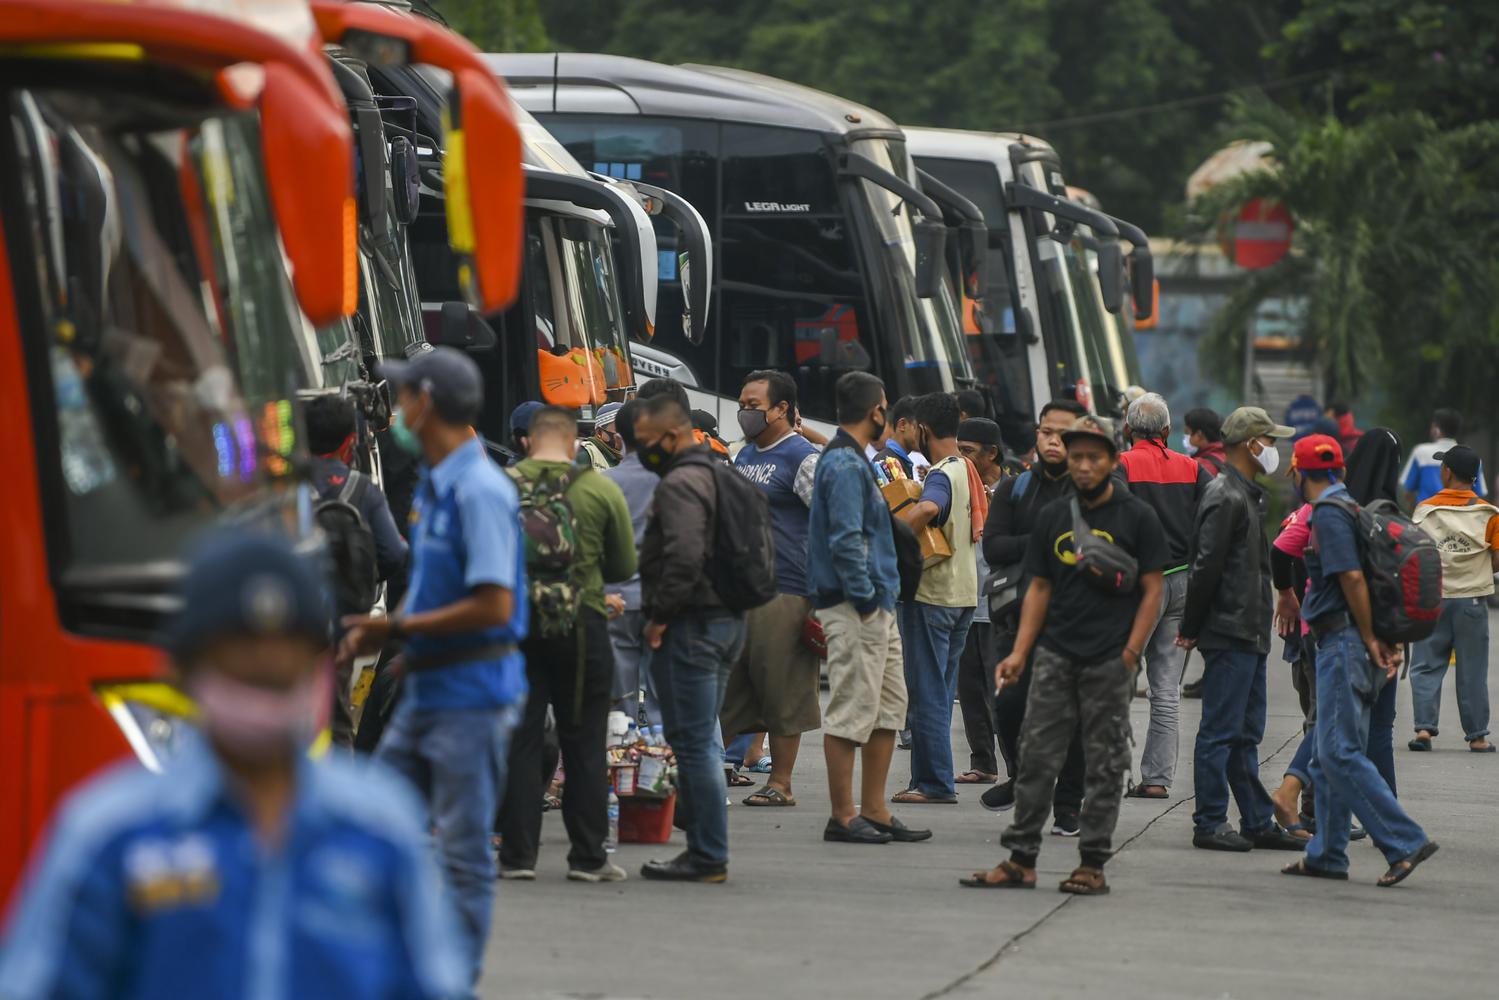 Sejumlah calon penumpang bersiap memasuki bus di Terminal Kampung Rambutan, Jakarta, Rabu (23/12/2020). Berdasarkan data Dishub Terminal Kampung Rambutan per-tanggal 22 Desember 2020 jumlah pemudik yang diberangkatkan menuju luar Jakarta melalui Terminal Kampung Rambutan sebanyak 4.699 penumpang, sementara jumlah penumpang bus yang tiba di Jakarta sebanyak 11.397 penumpang.